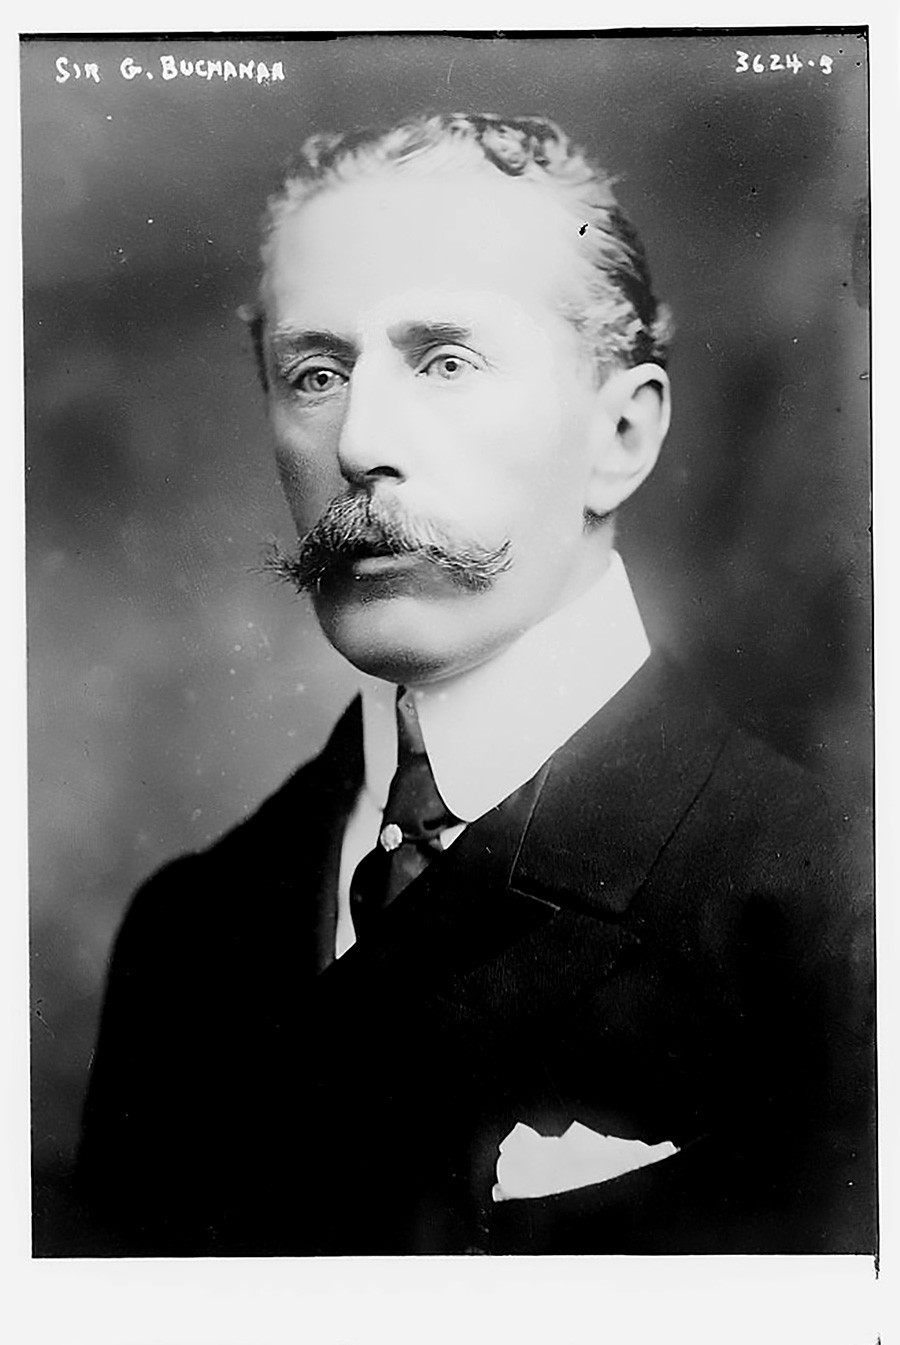 George William Buchanan, 1915.
